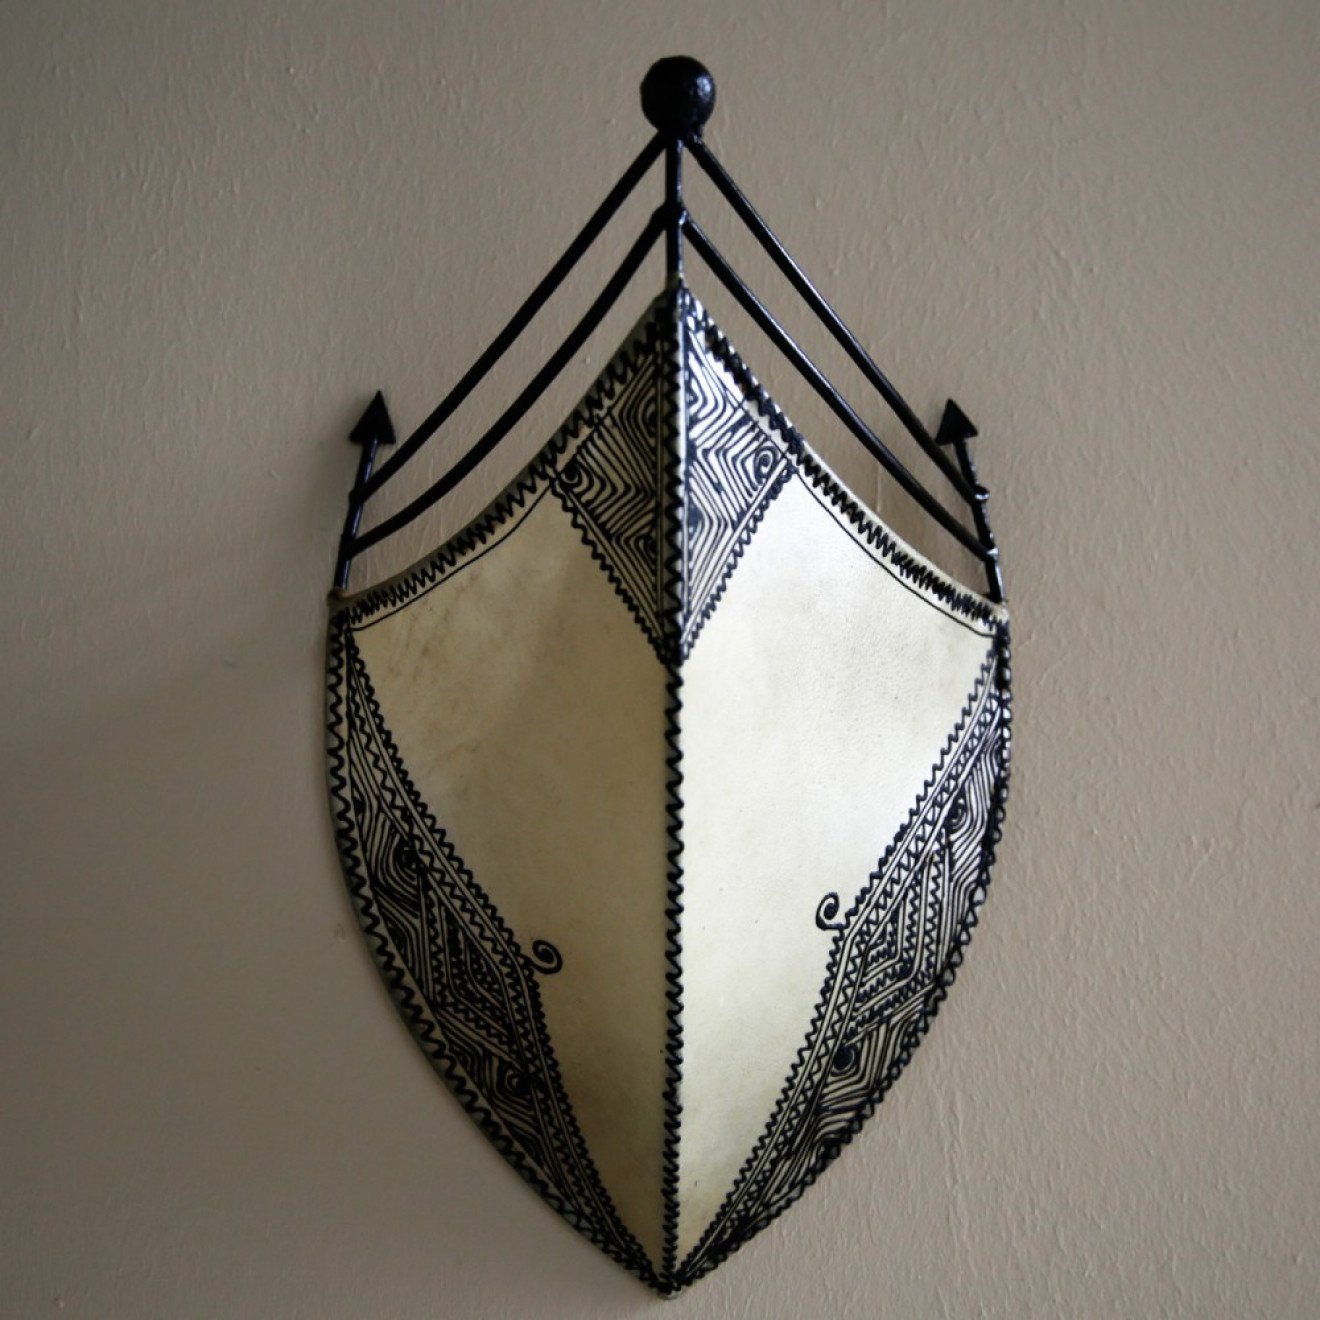 Marokkanische Wandlampe, Leder l-artisan Wandshirm Natur Wandleuchte, Orientalische Afrah